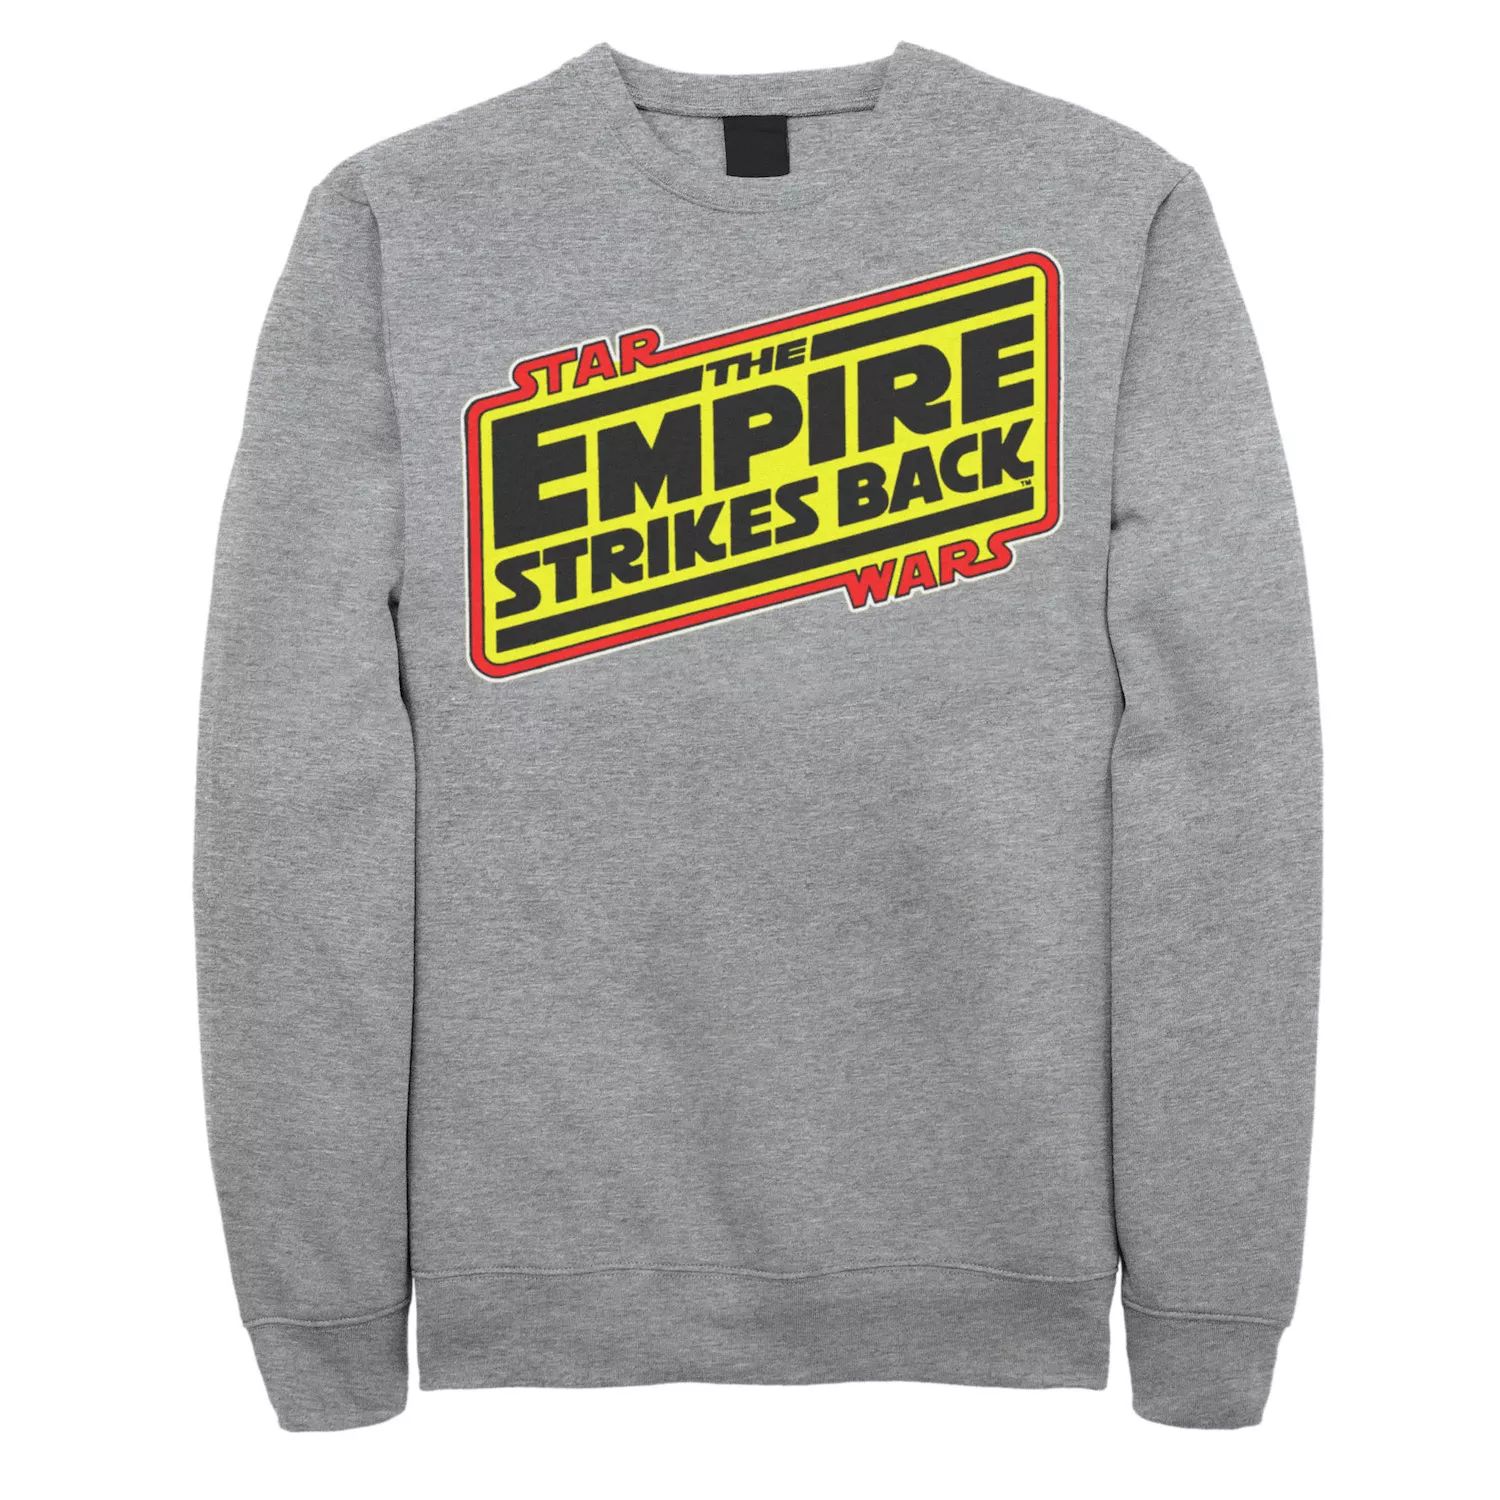 саундтрек disney ost star wars the empire strikes back john williams Мужская толстовка с винтажным логотипом: The Empire Strikes Back Star Wars